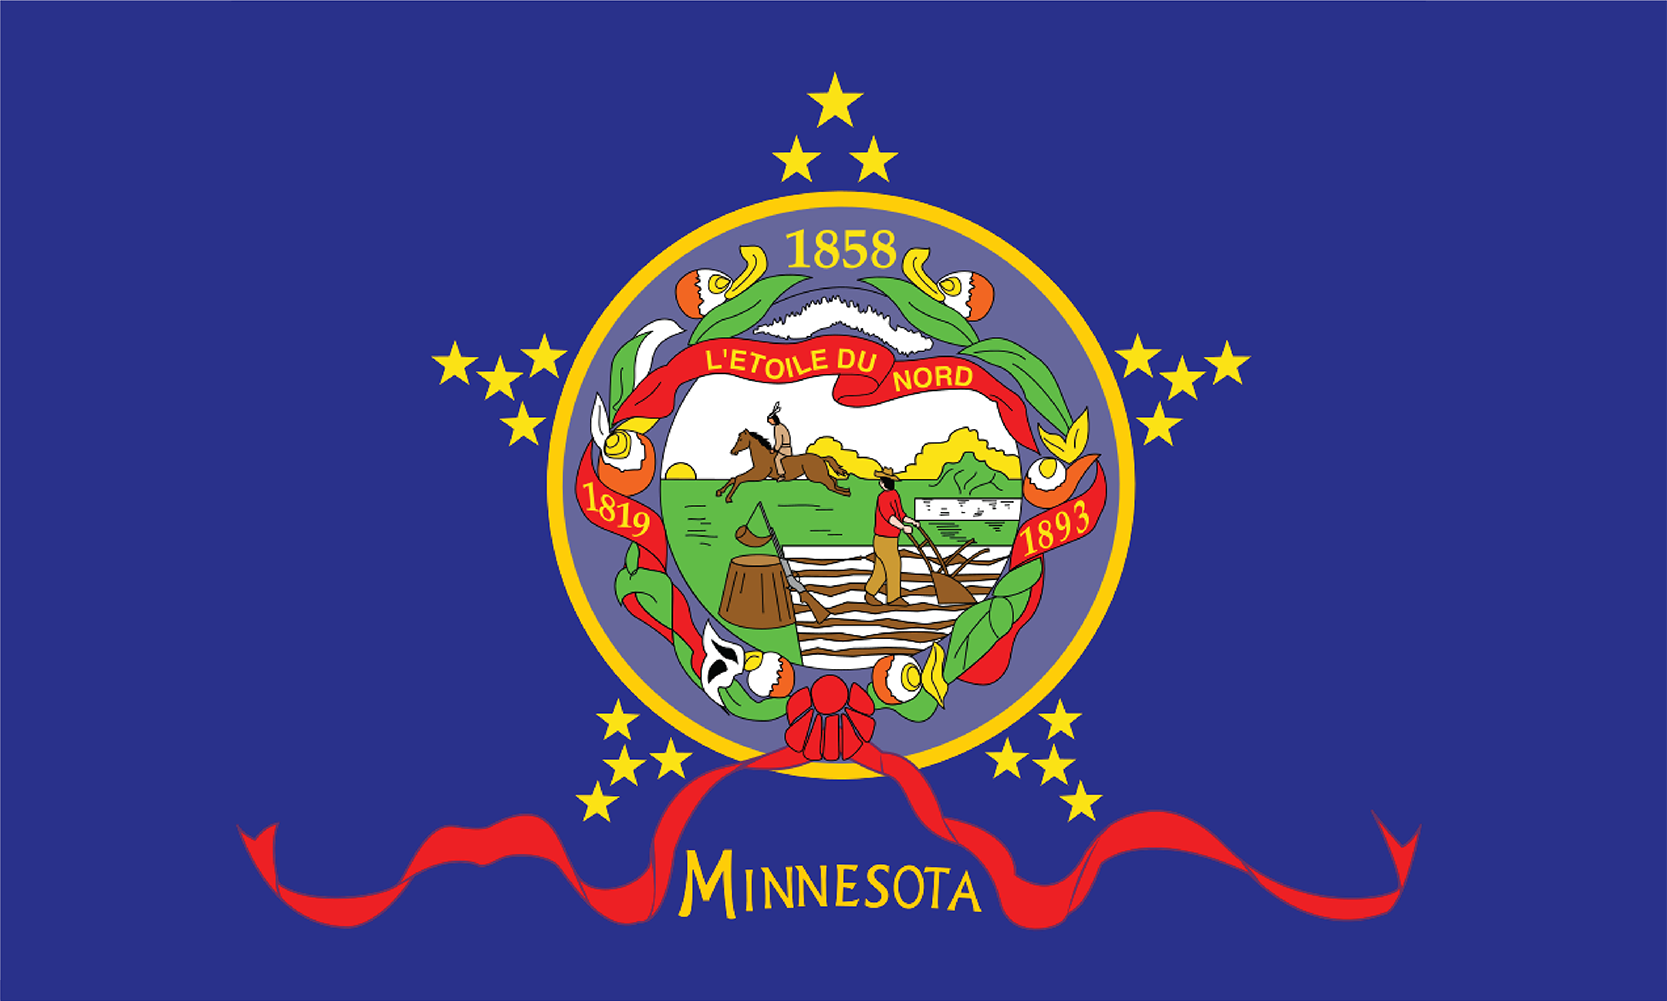 The Flag of Minnesota - Original